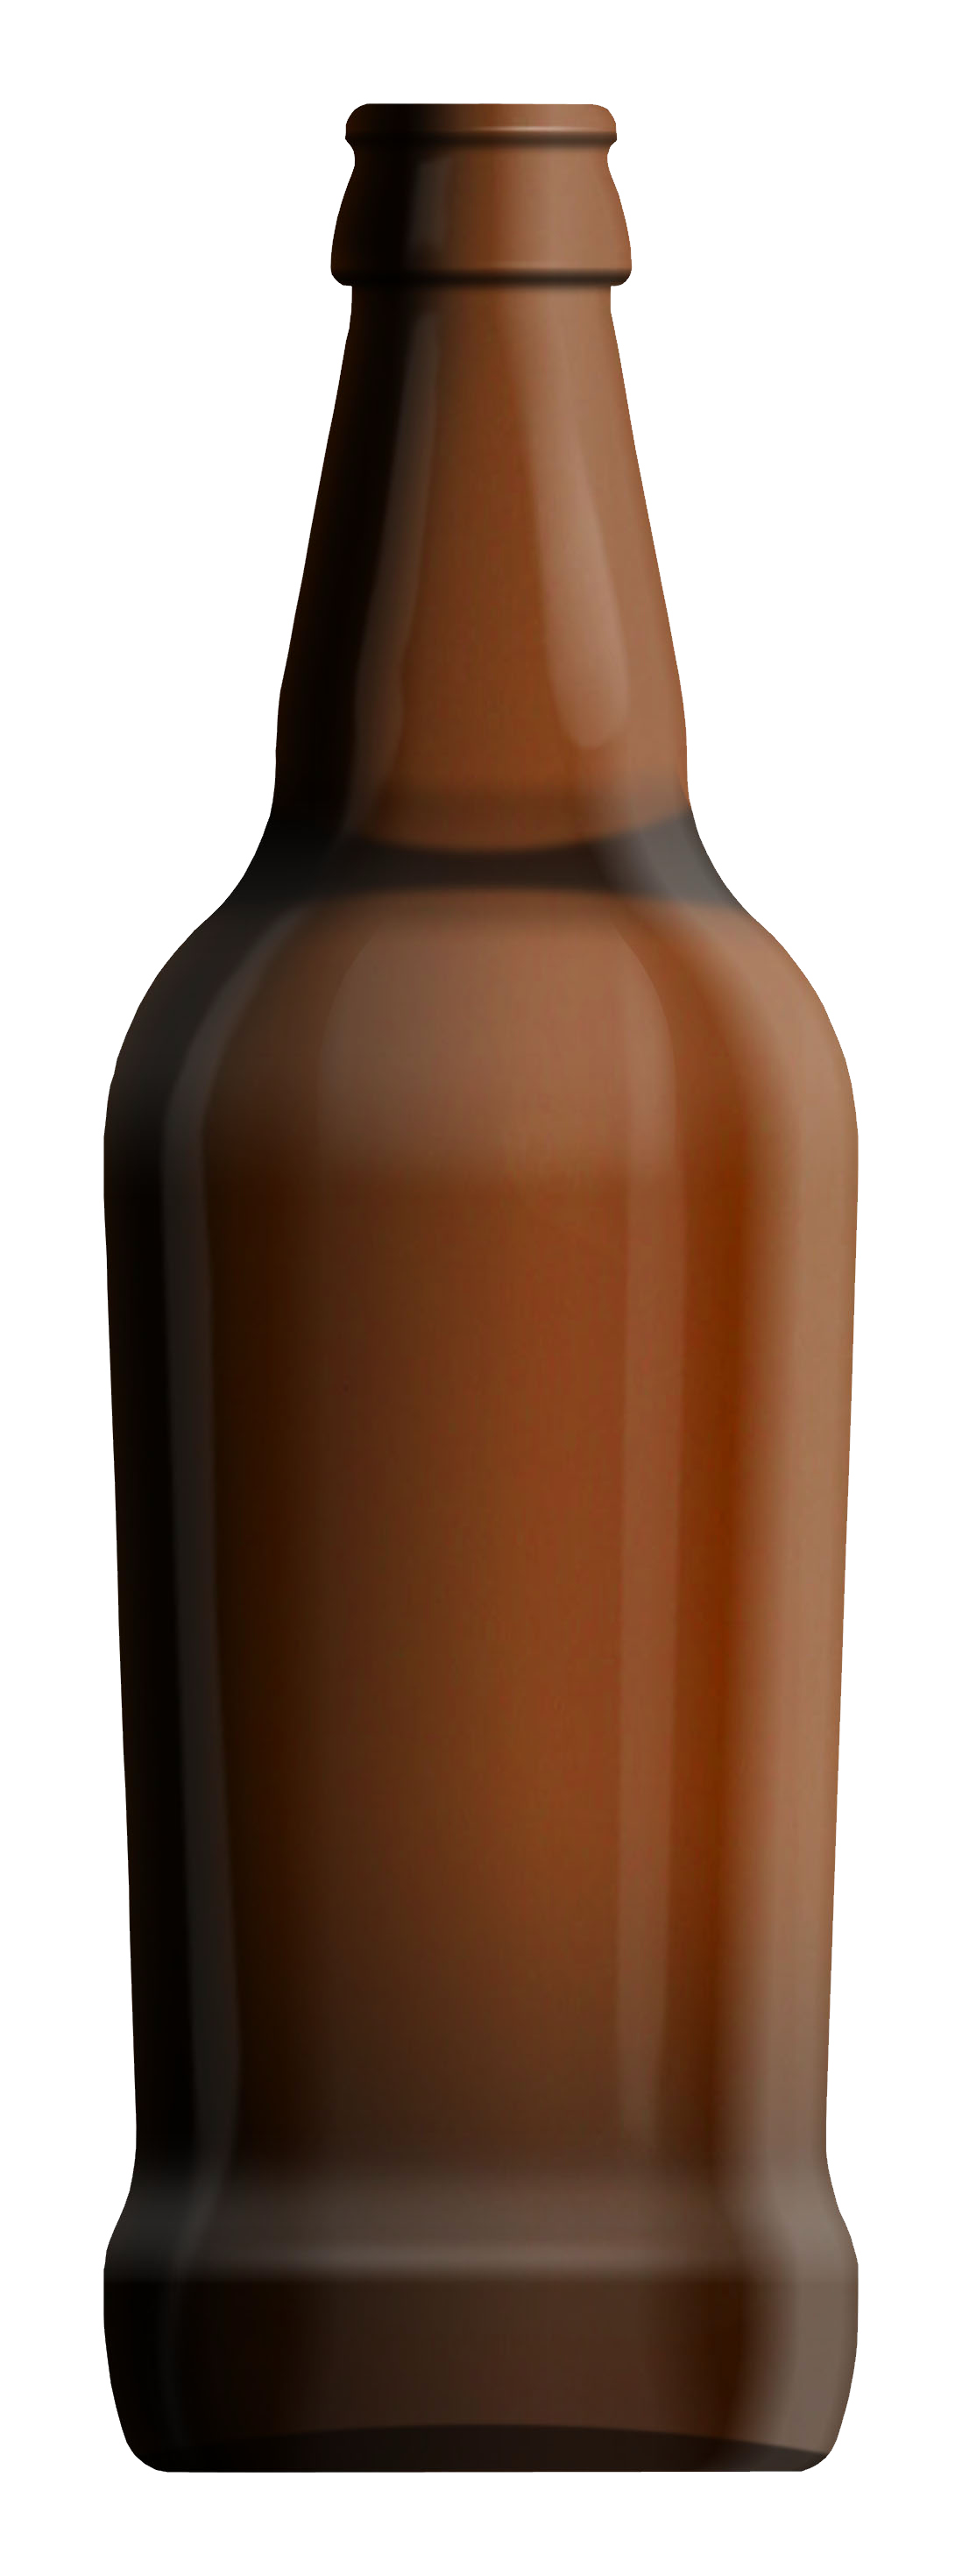 Beer bottle PNG image